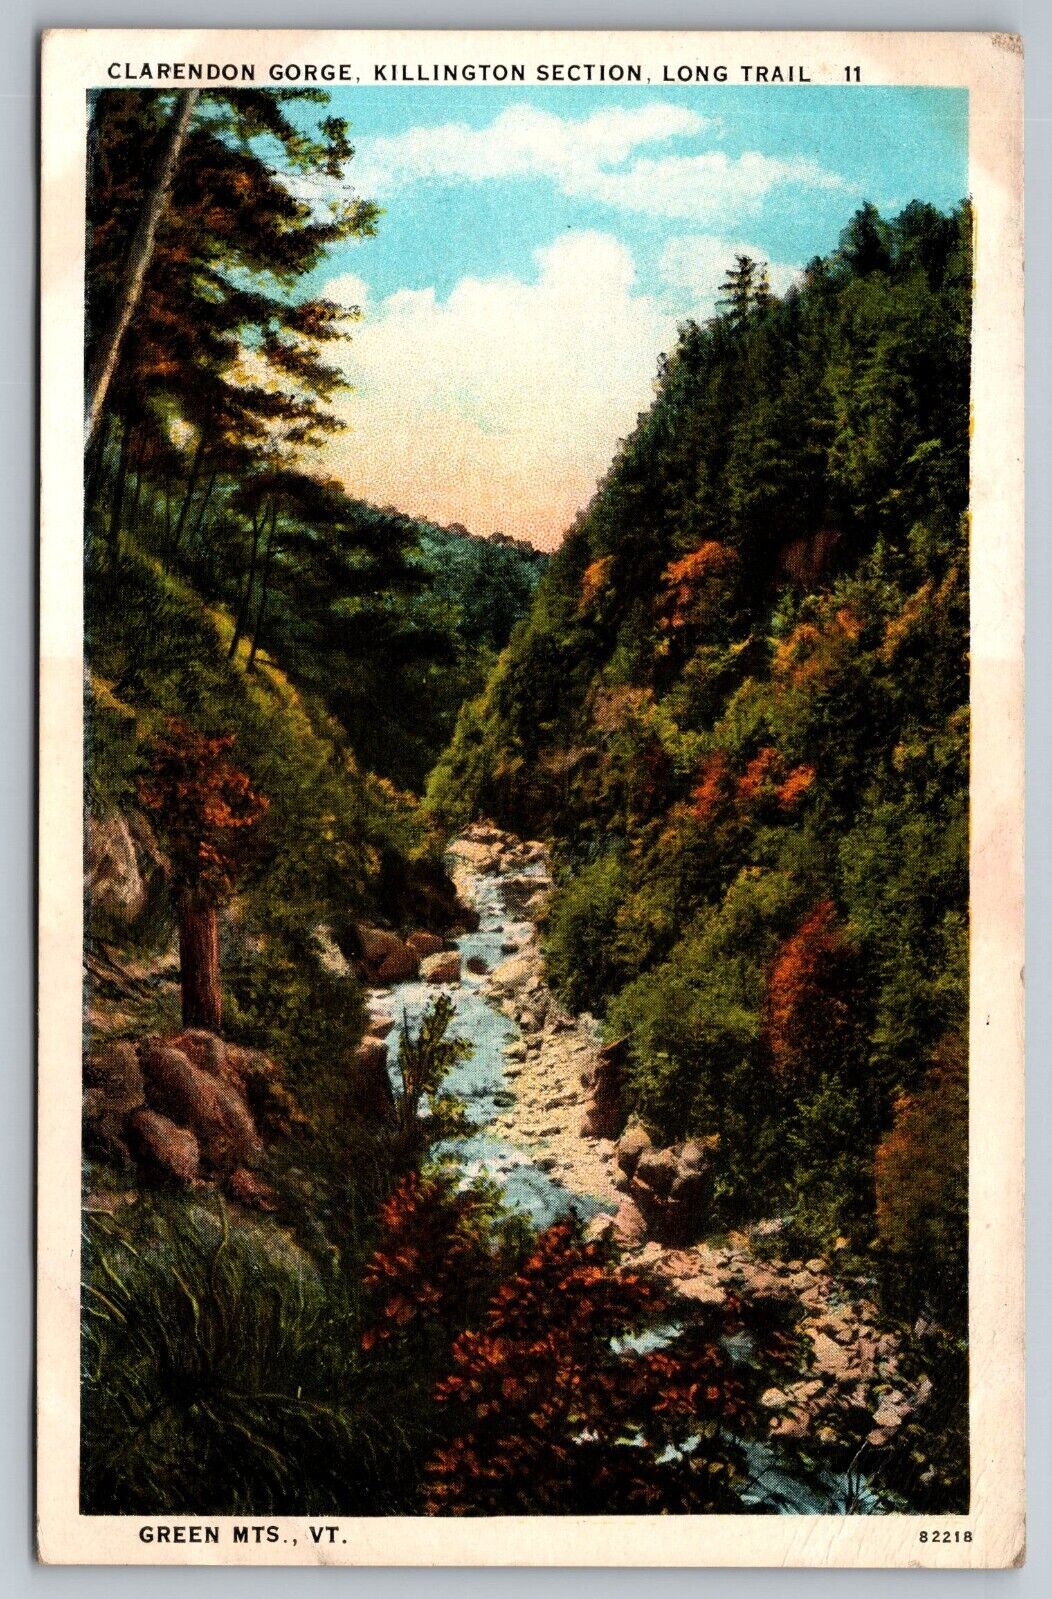 1930 Clarendon Gorge. Killington Section. Long Trail. Vermont Vintage Postcard